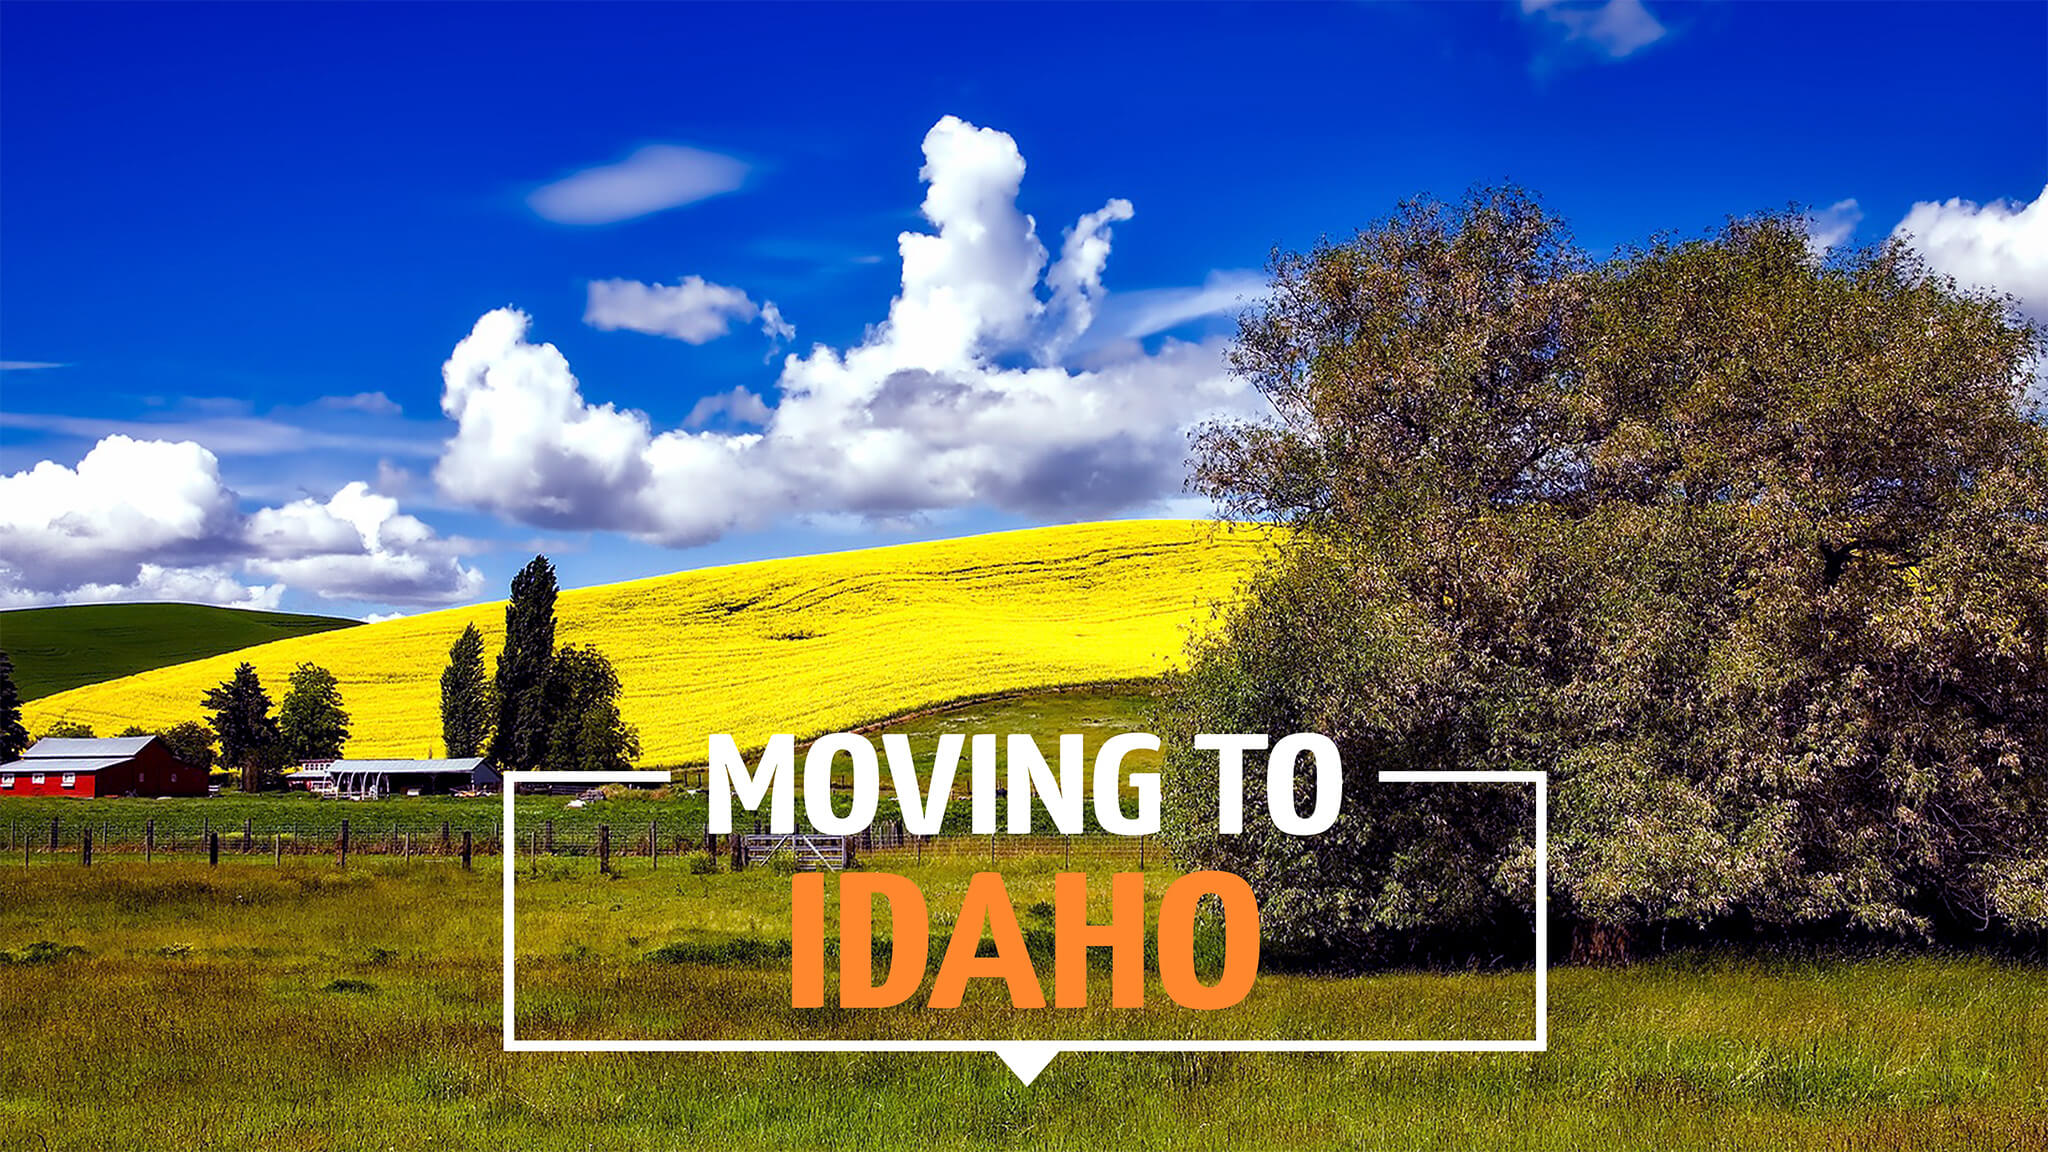 Moving to Idaho